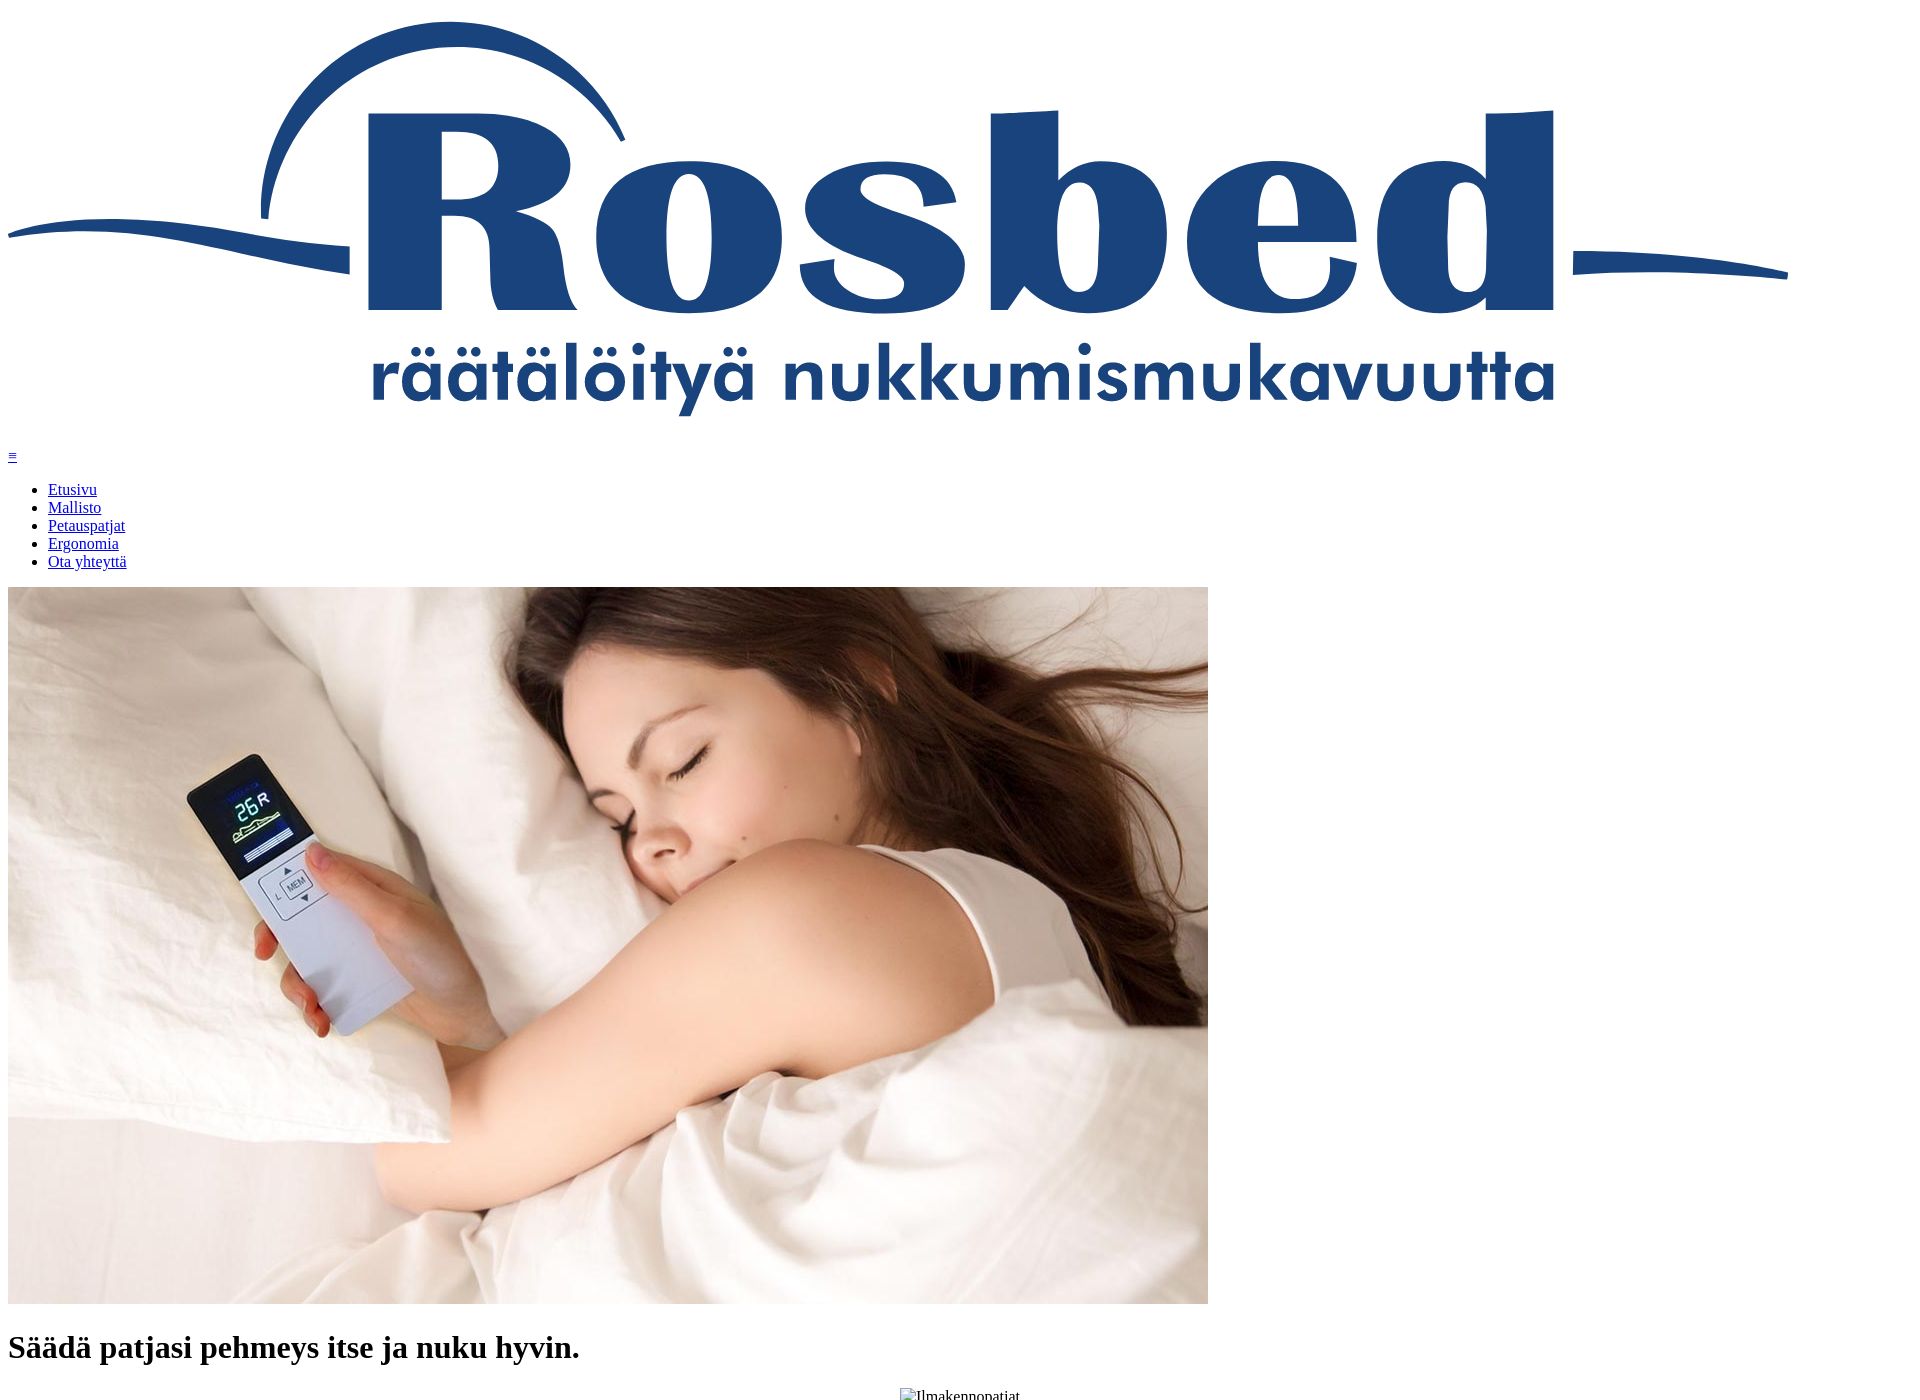 Näyttökuva rosbed.fi